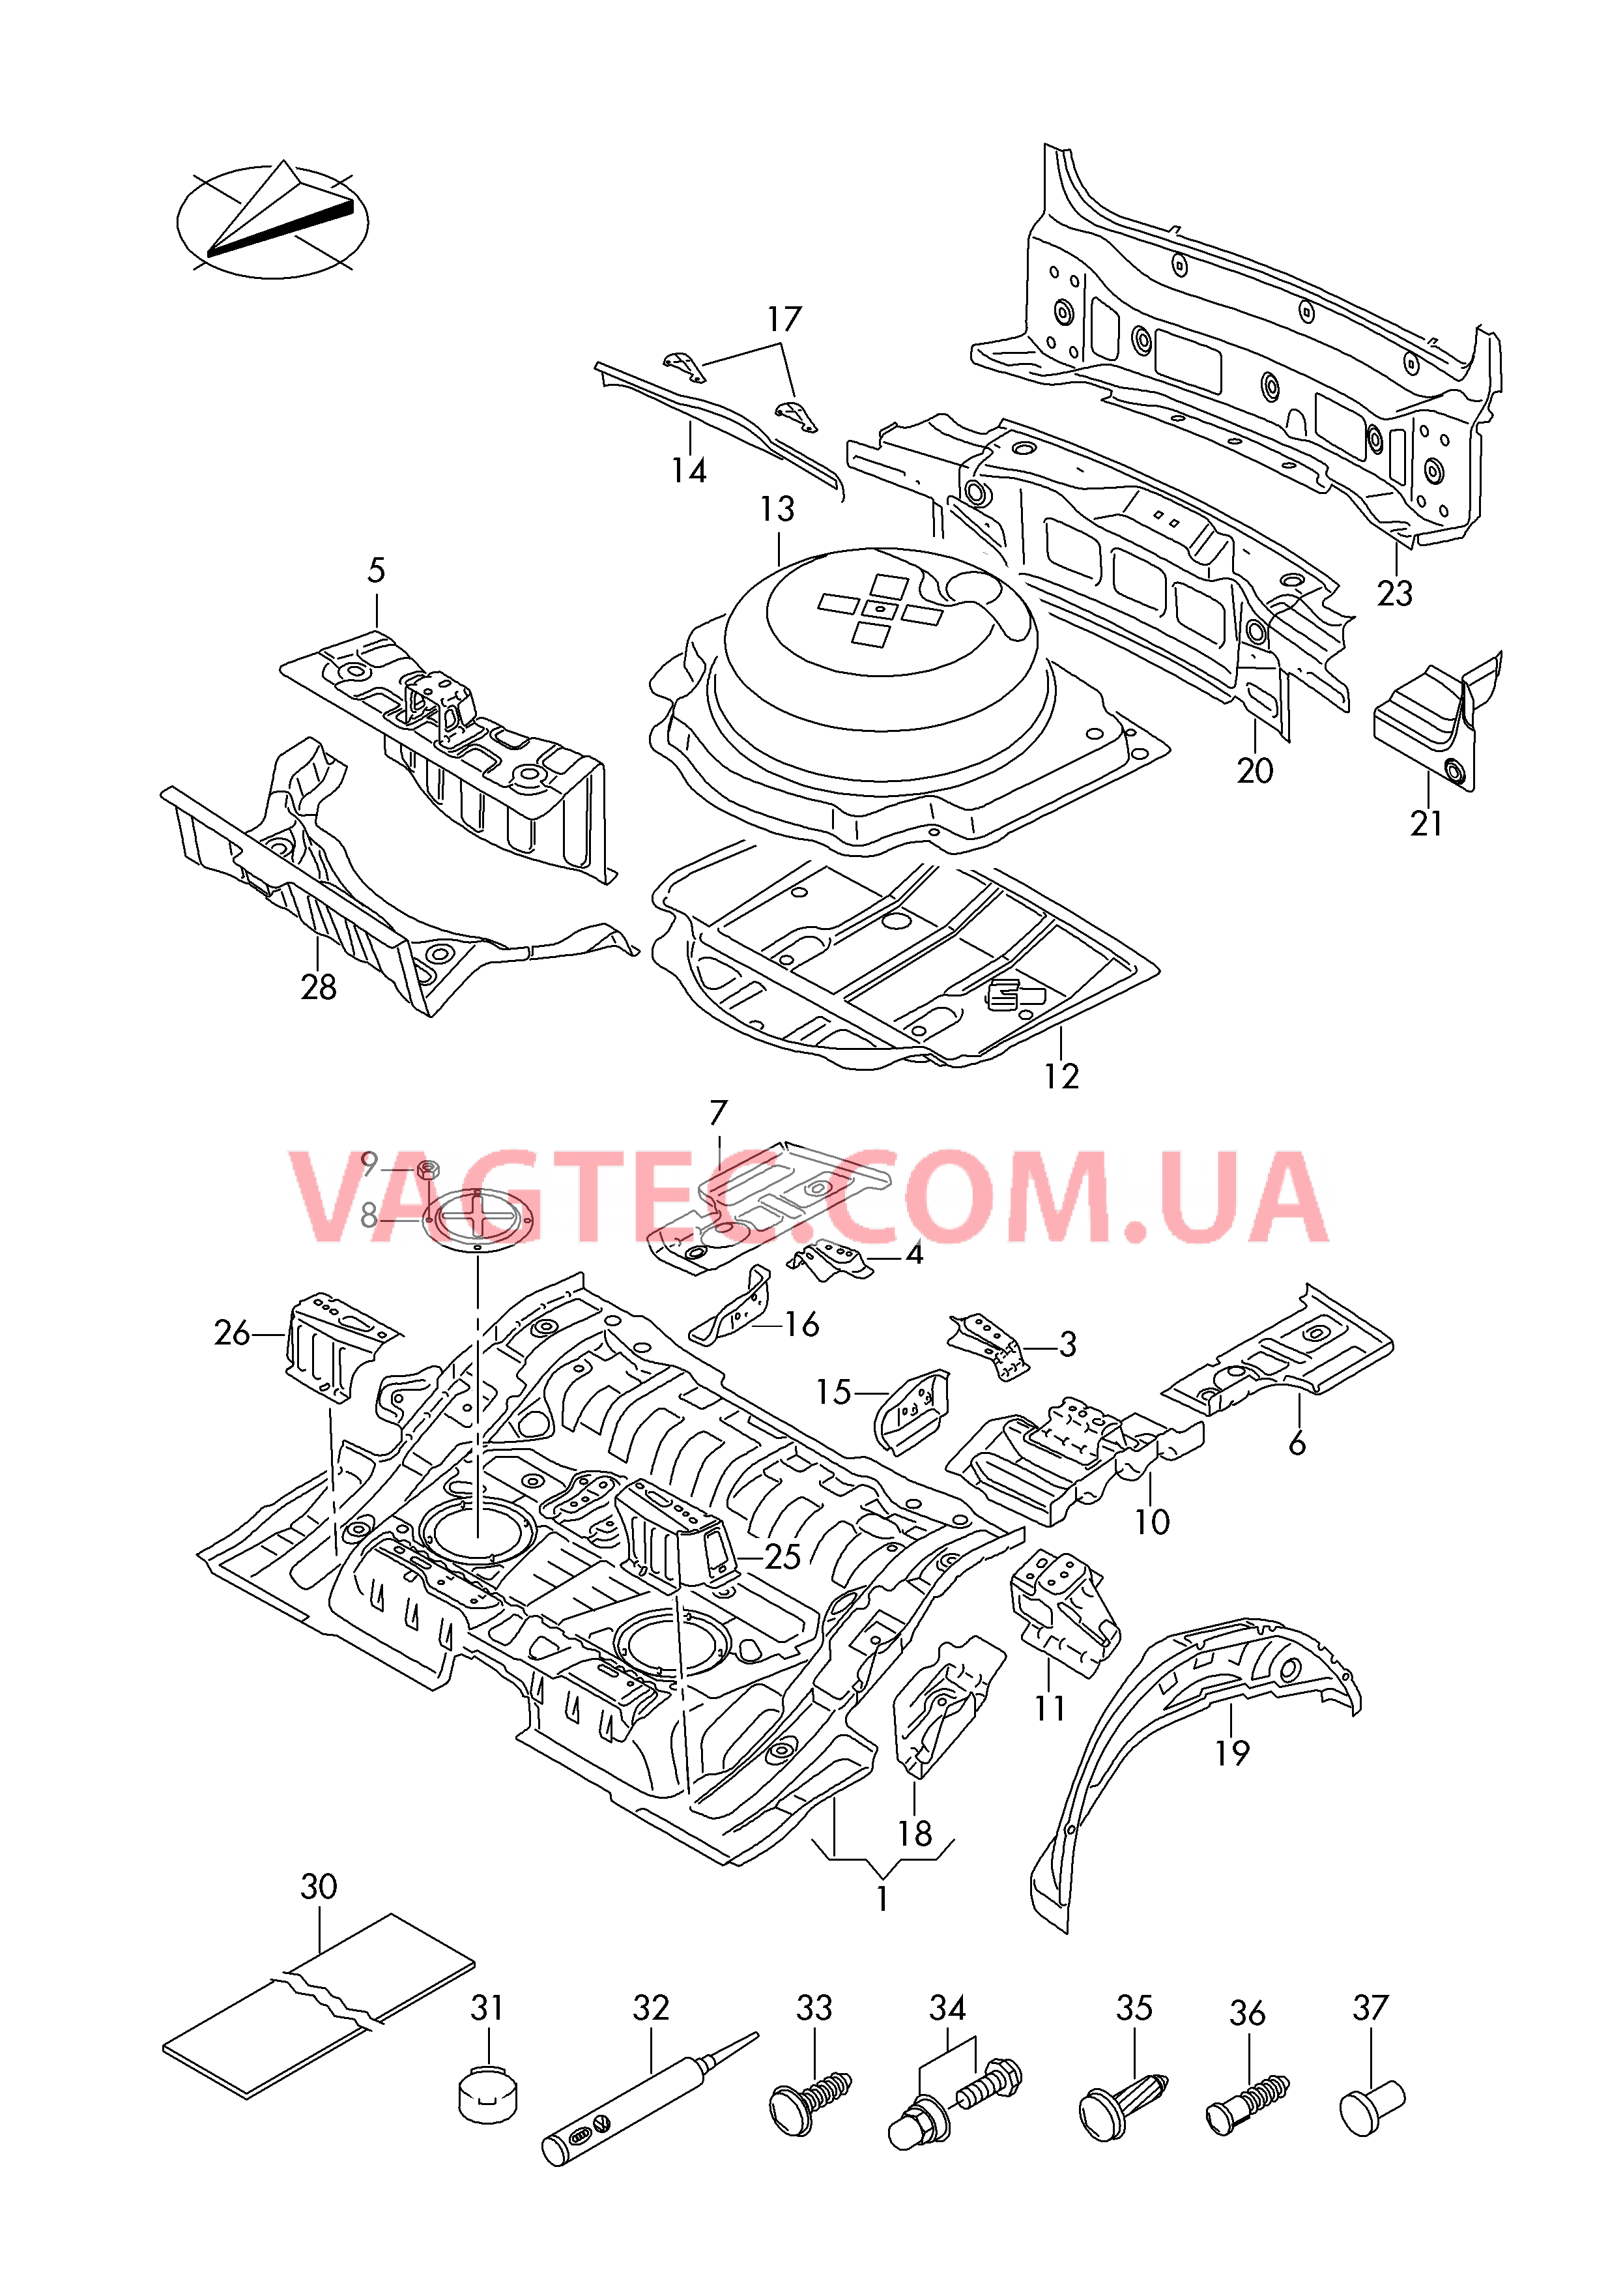 Детали нижней части кузова Задняя панель  для VOLKSWAGEN Touareg 2016